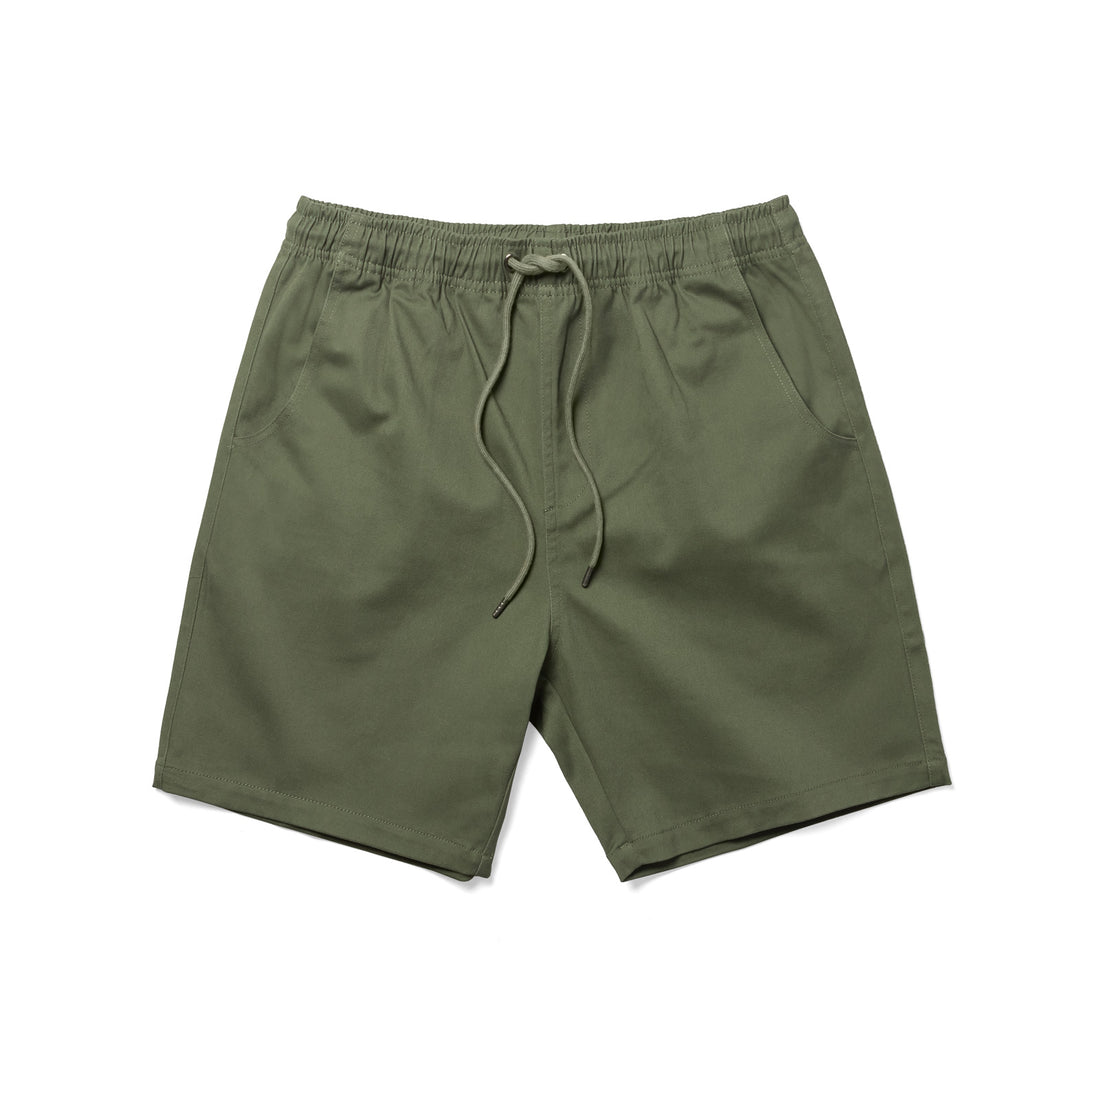 Lifestyle Chino Shorts - olive